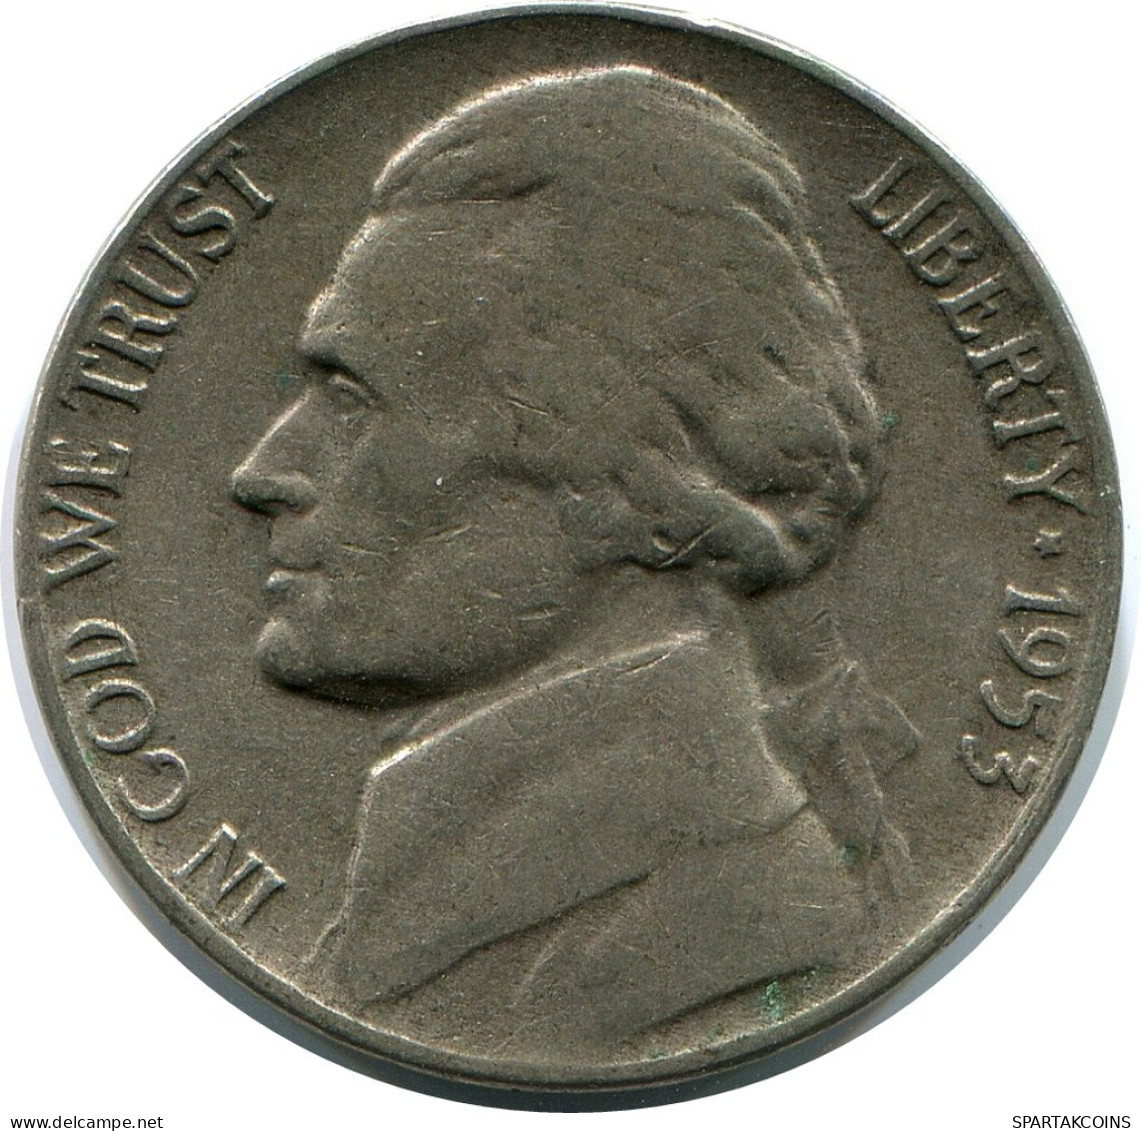 5 CENTS 1953 USA Coin #AZ262.U - 2, 3 & 20 Cents